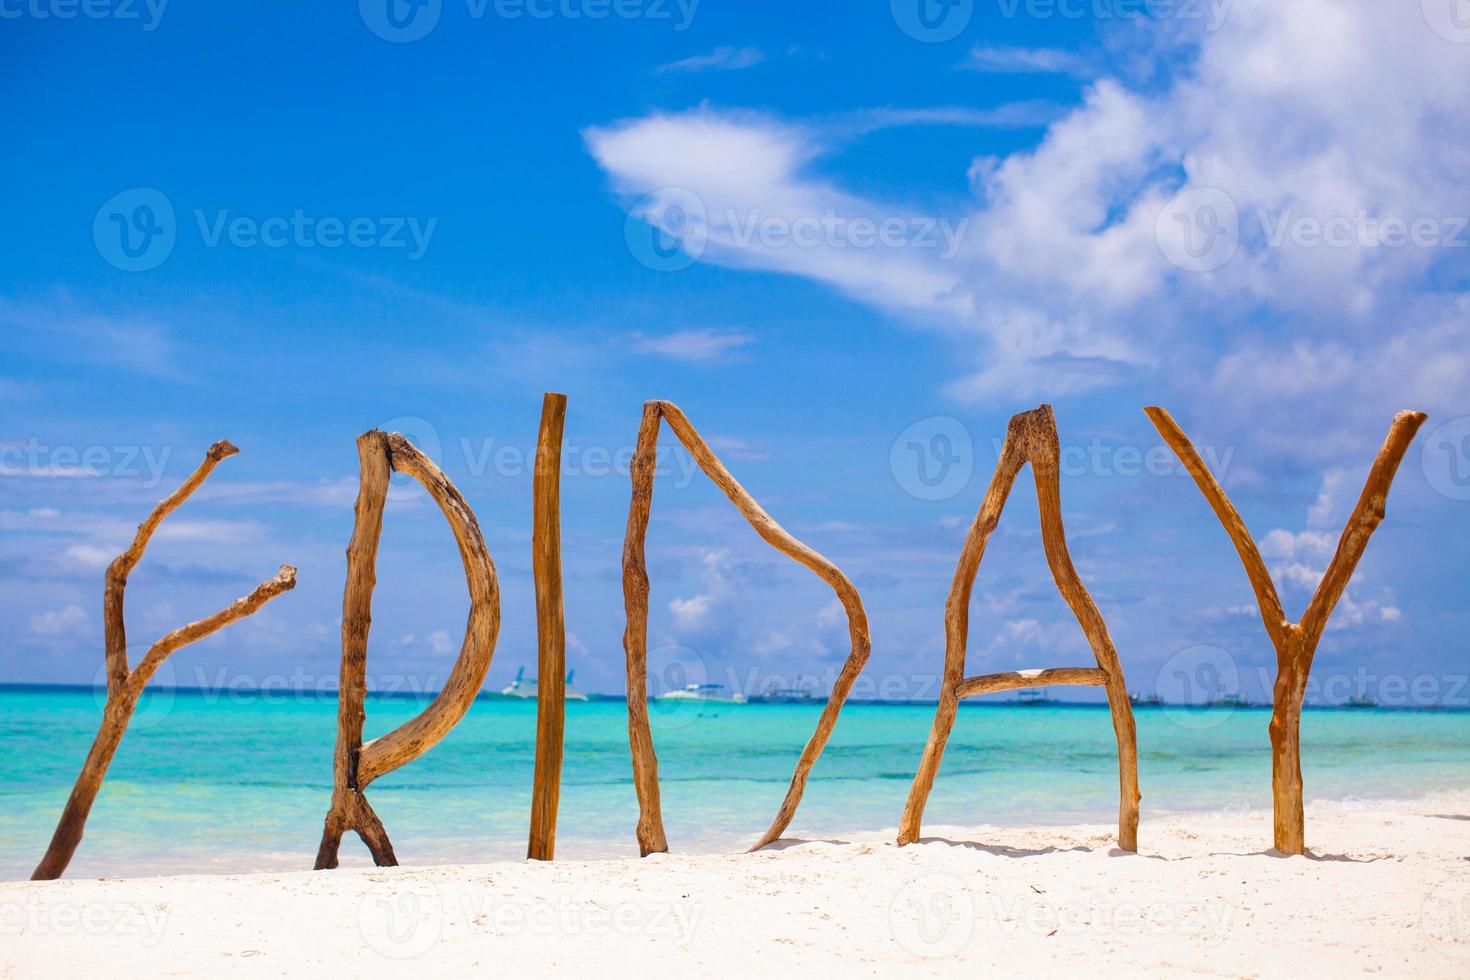 viernes de palabra hecho de madera en la isla de boracay fondo mar turquesa foto